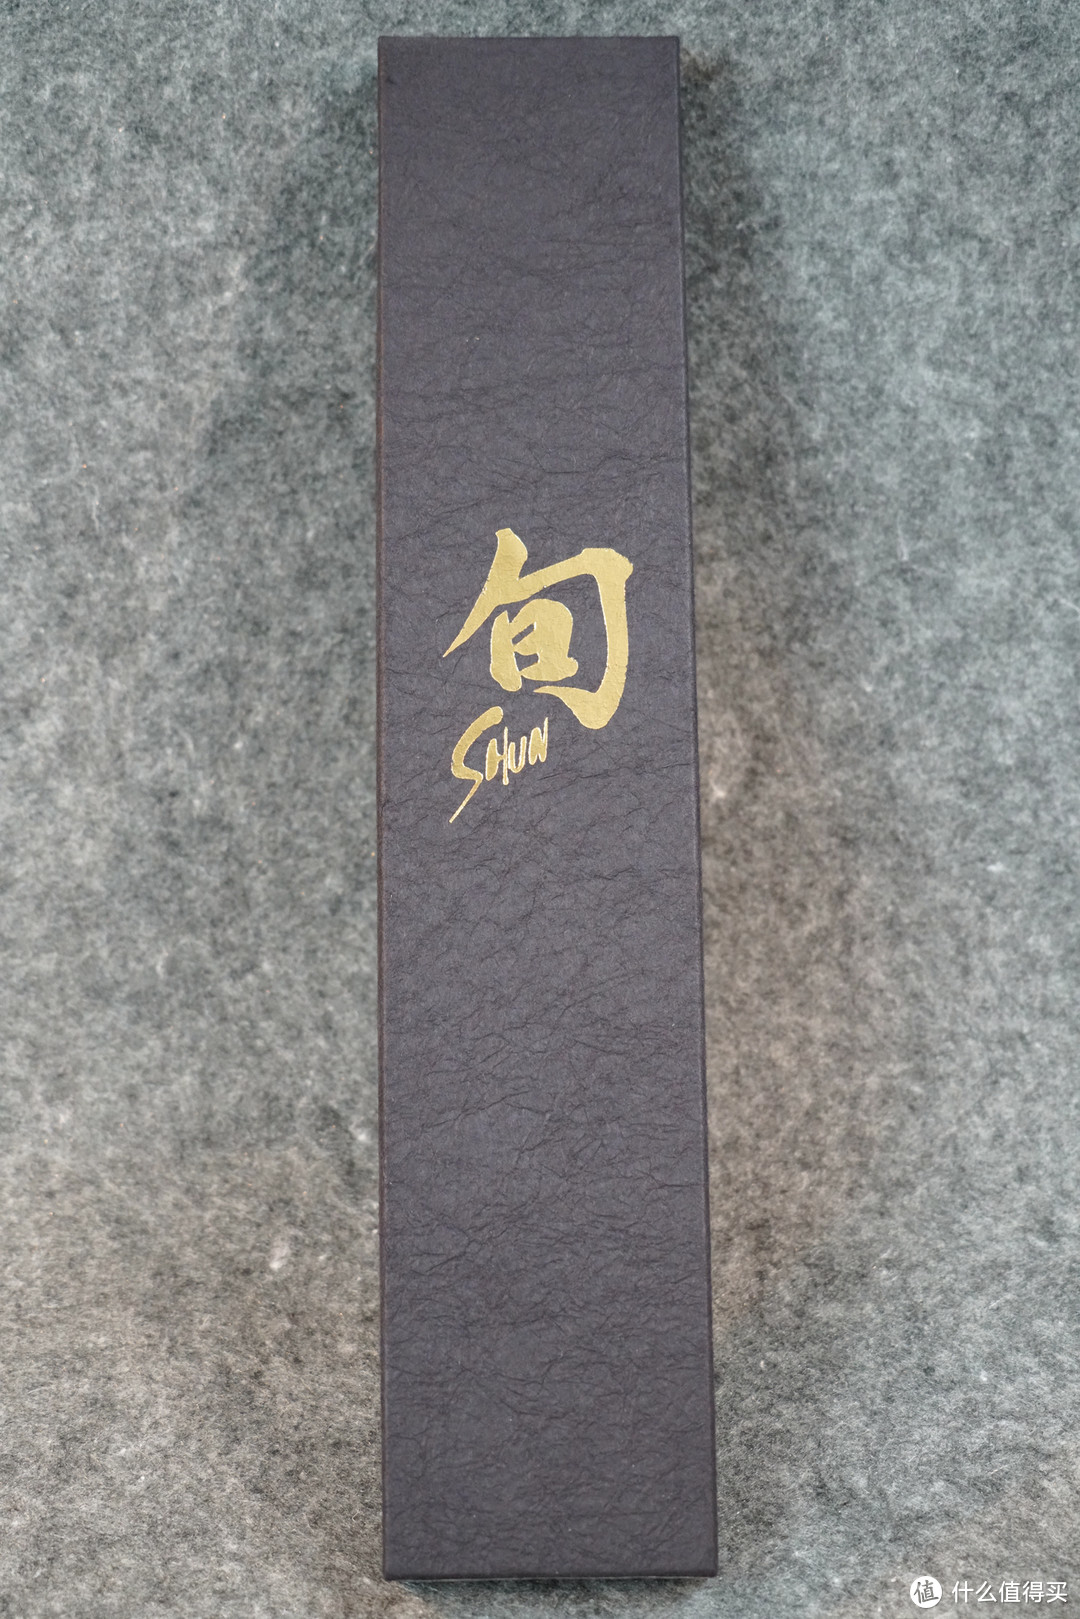 日系厨刀优雅进阶之选：贝印 shun 旬 DM-0719 经典系列 主厨刀